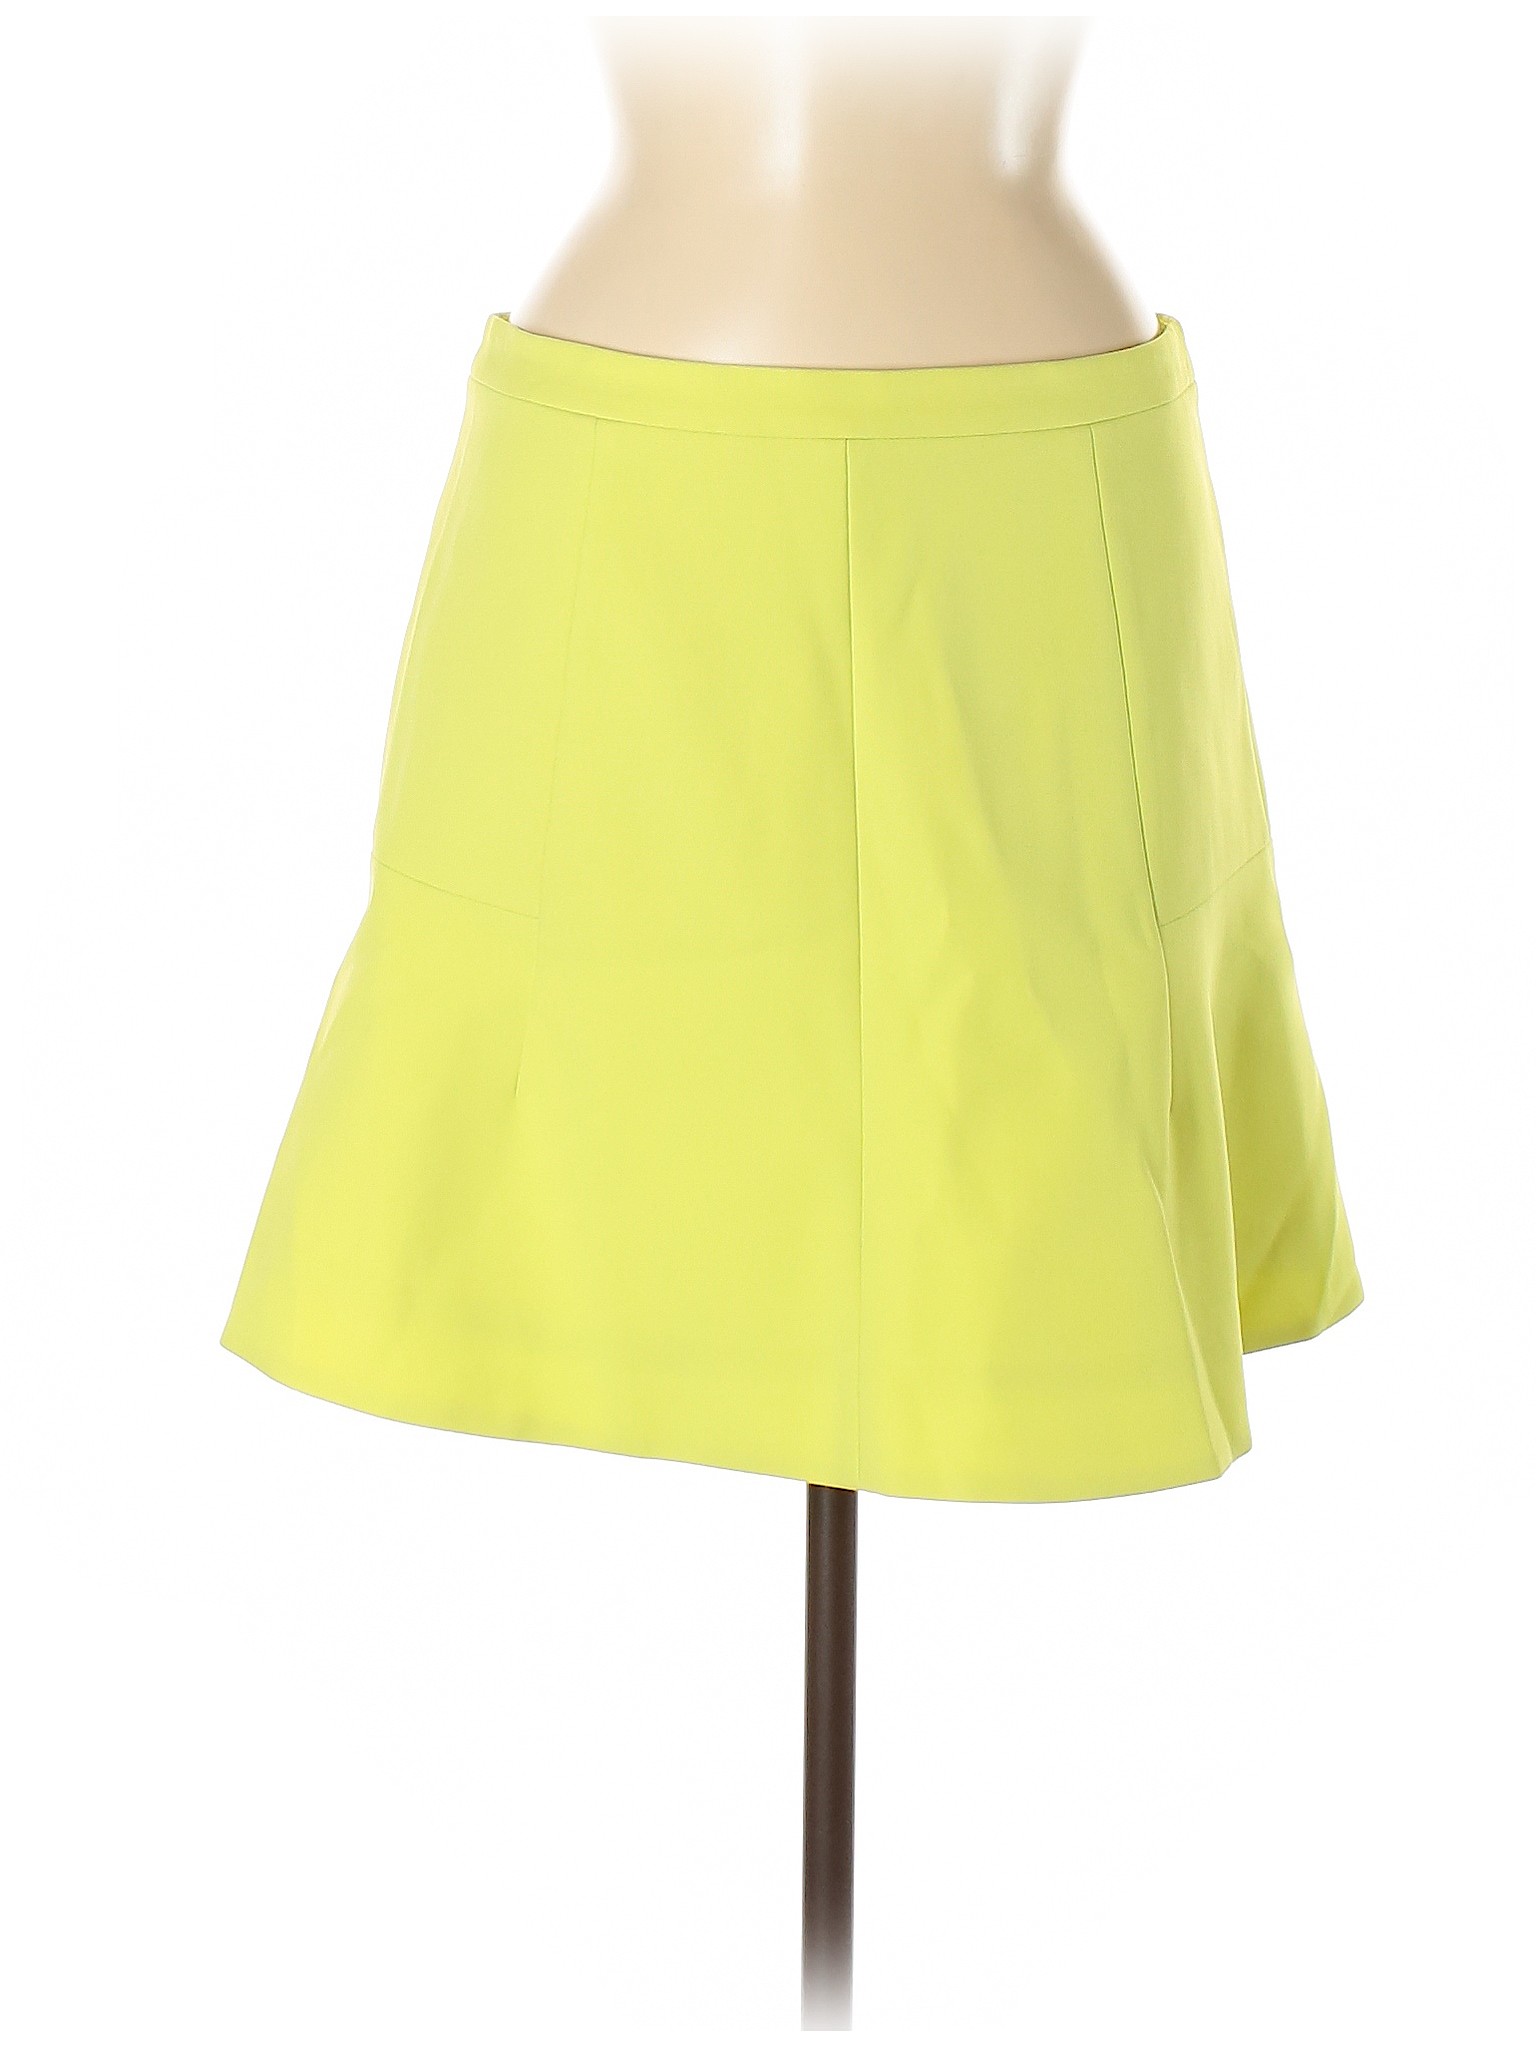 J.Crew Women Yellow Casual Skirt 8 | eBay